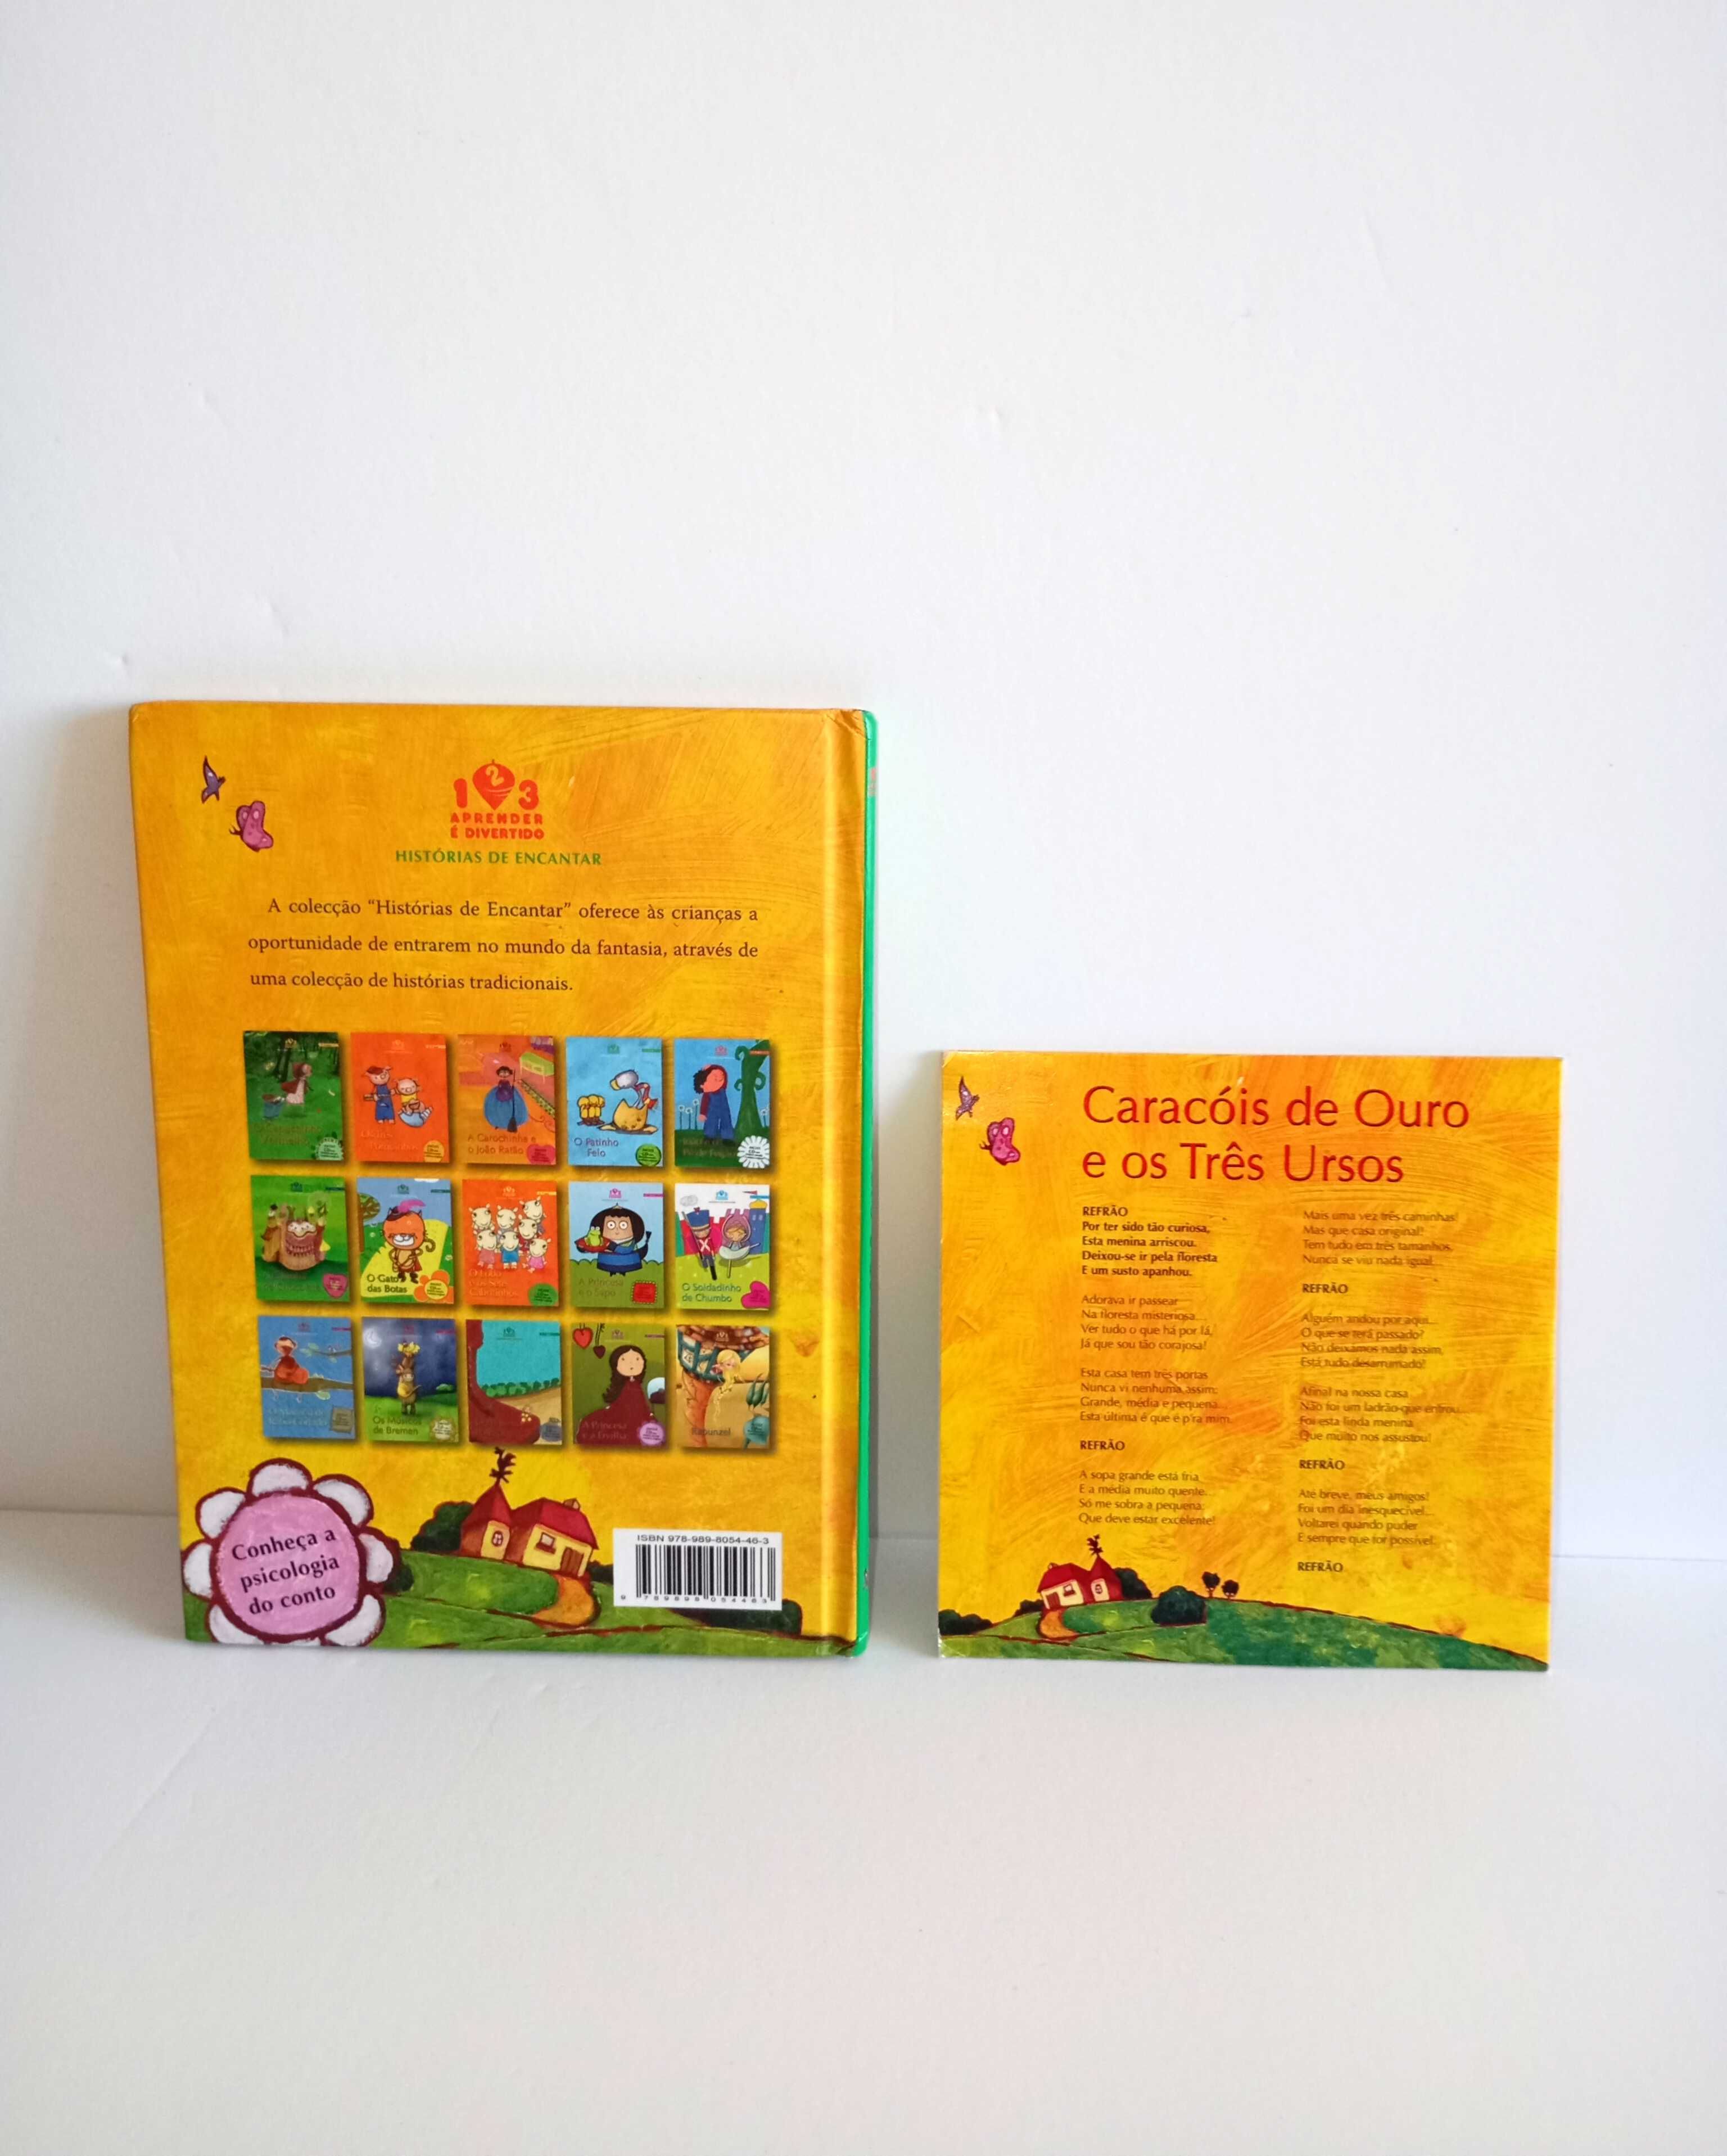 Caracóis de ouro e os 3 ursos Livro+ CD -Coleção Histórias de encantar